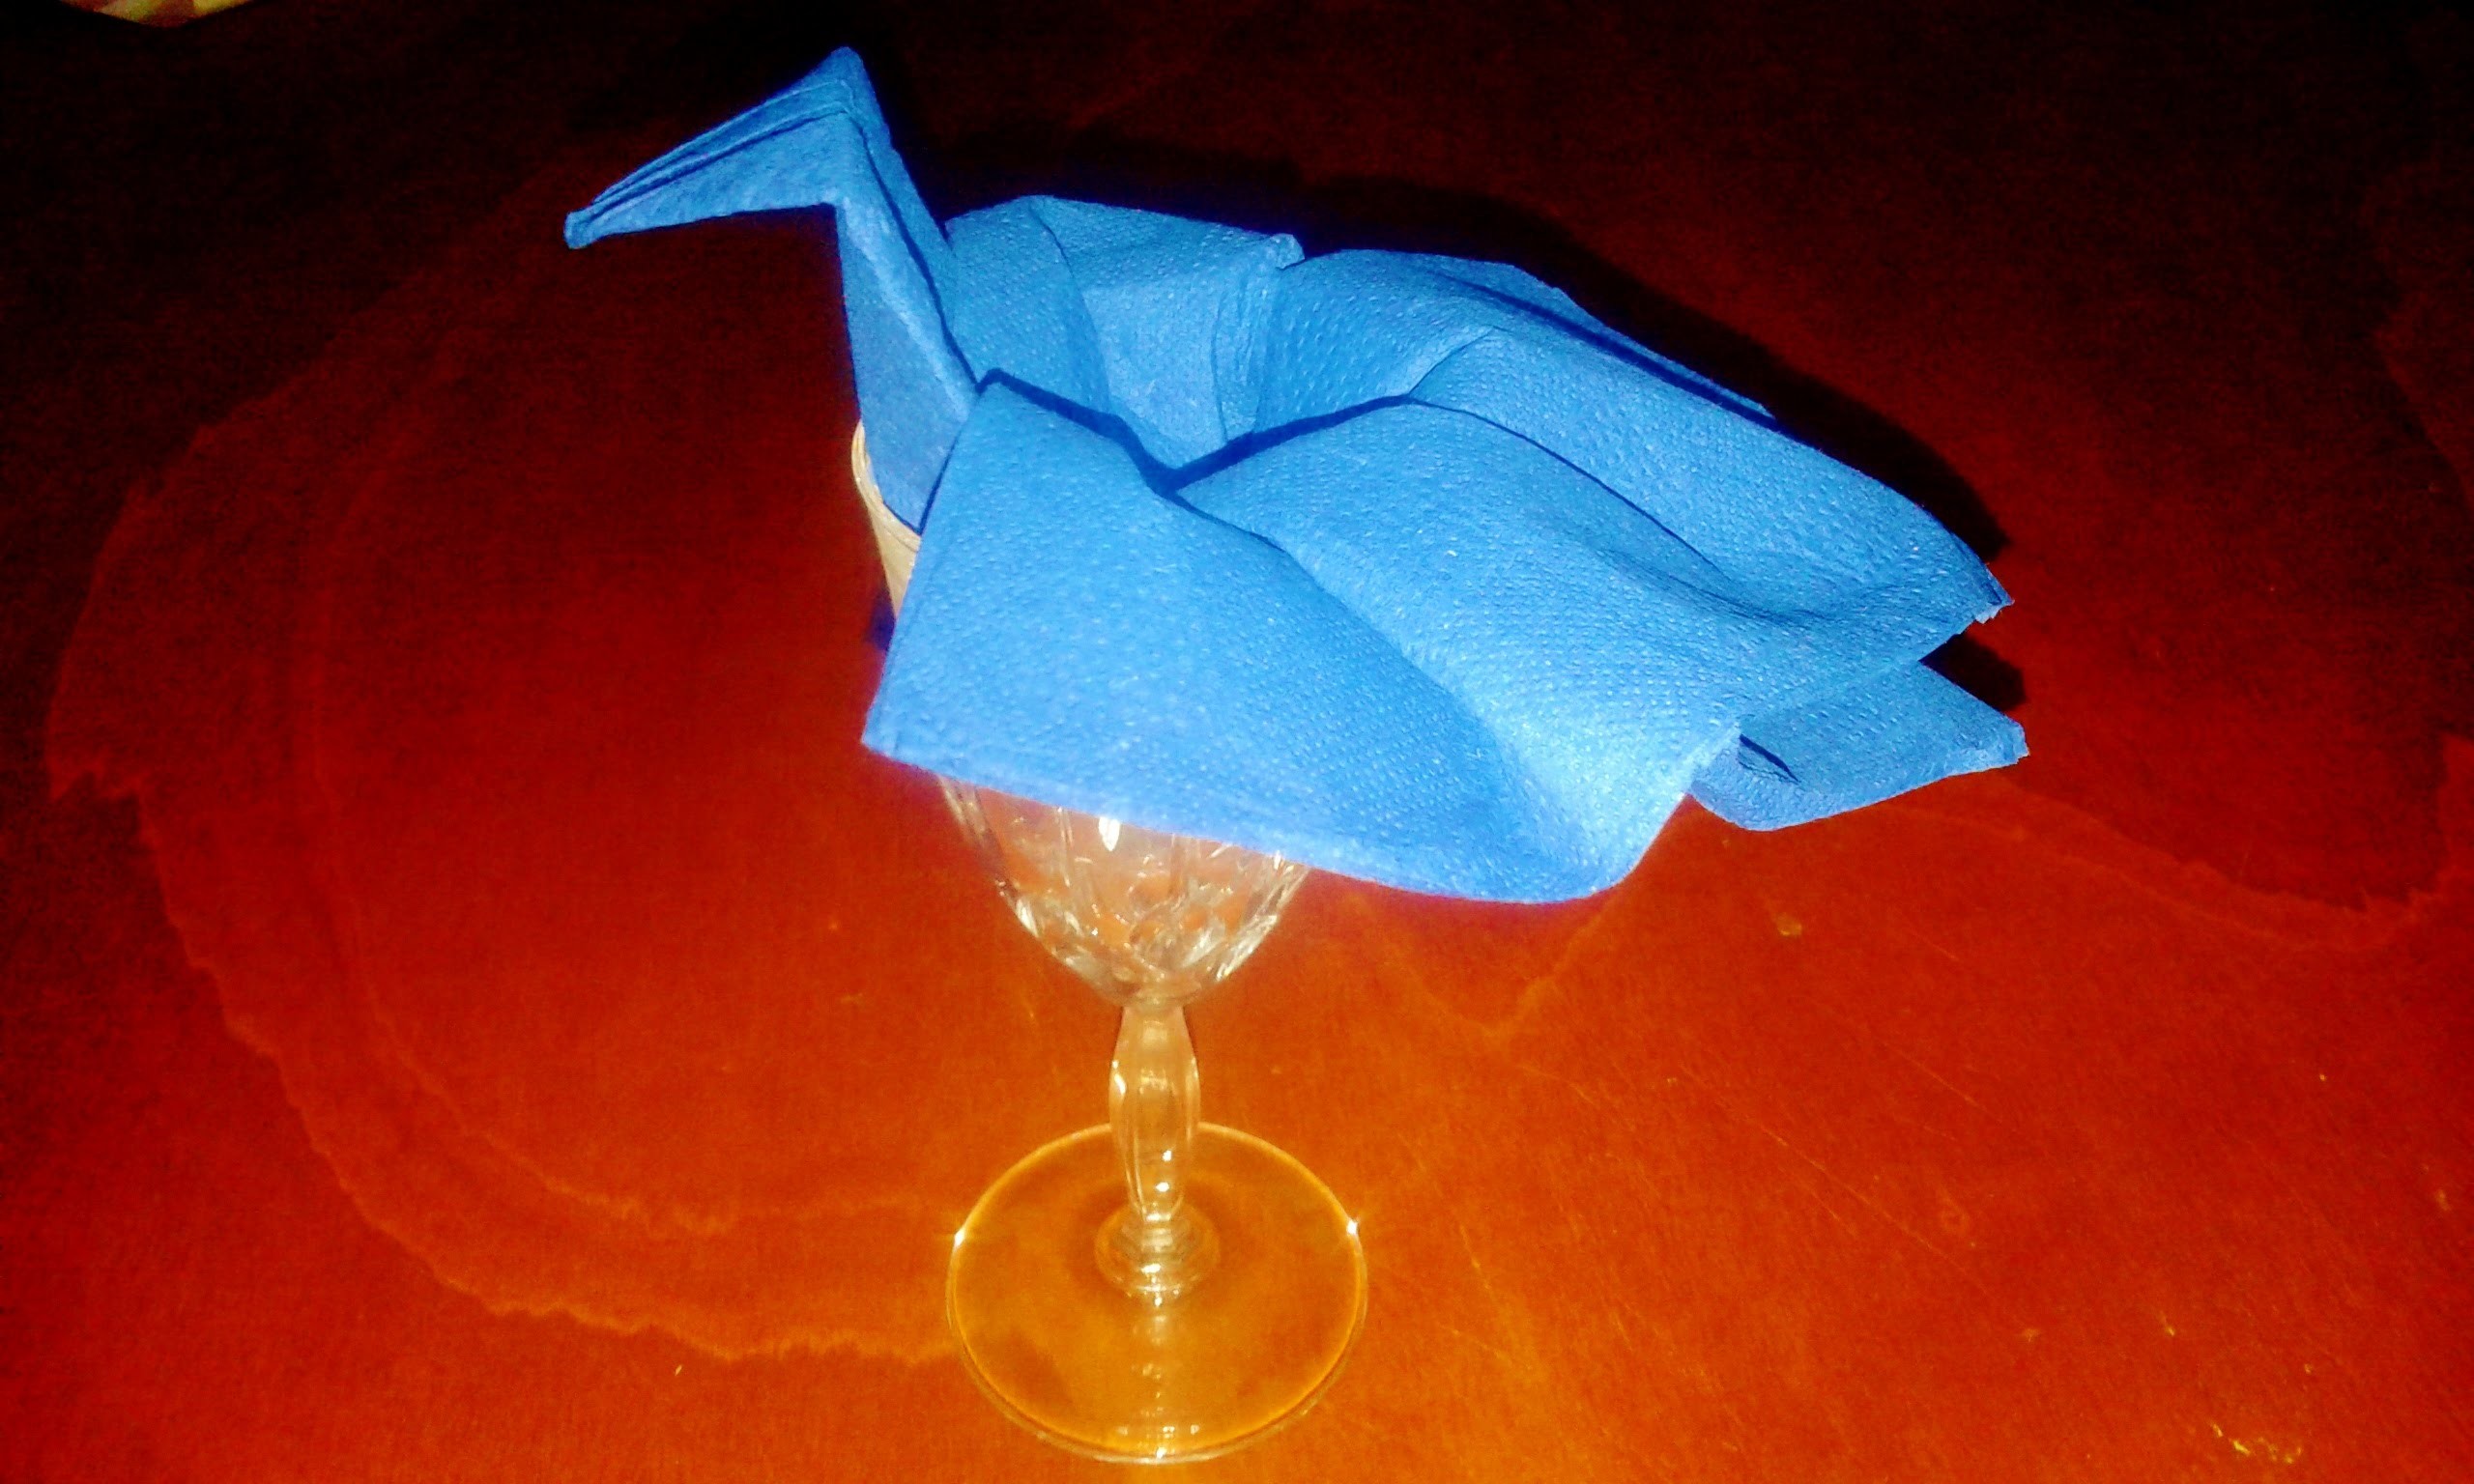 Piegare i Tovaglioli Cigno nel Bicchiere.How to Fold Towels Swan